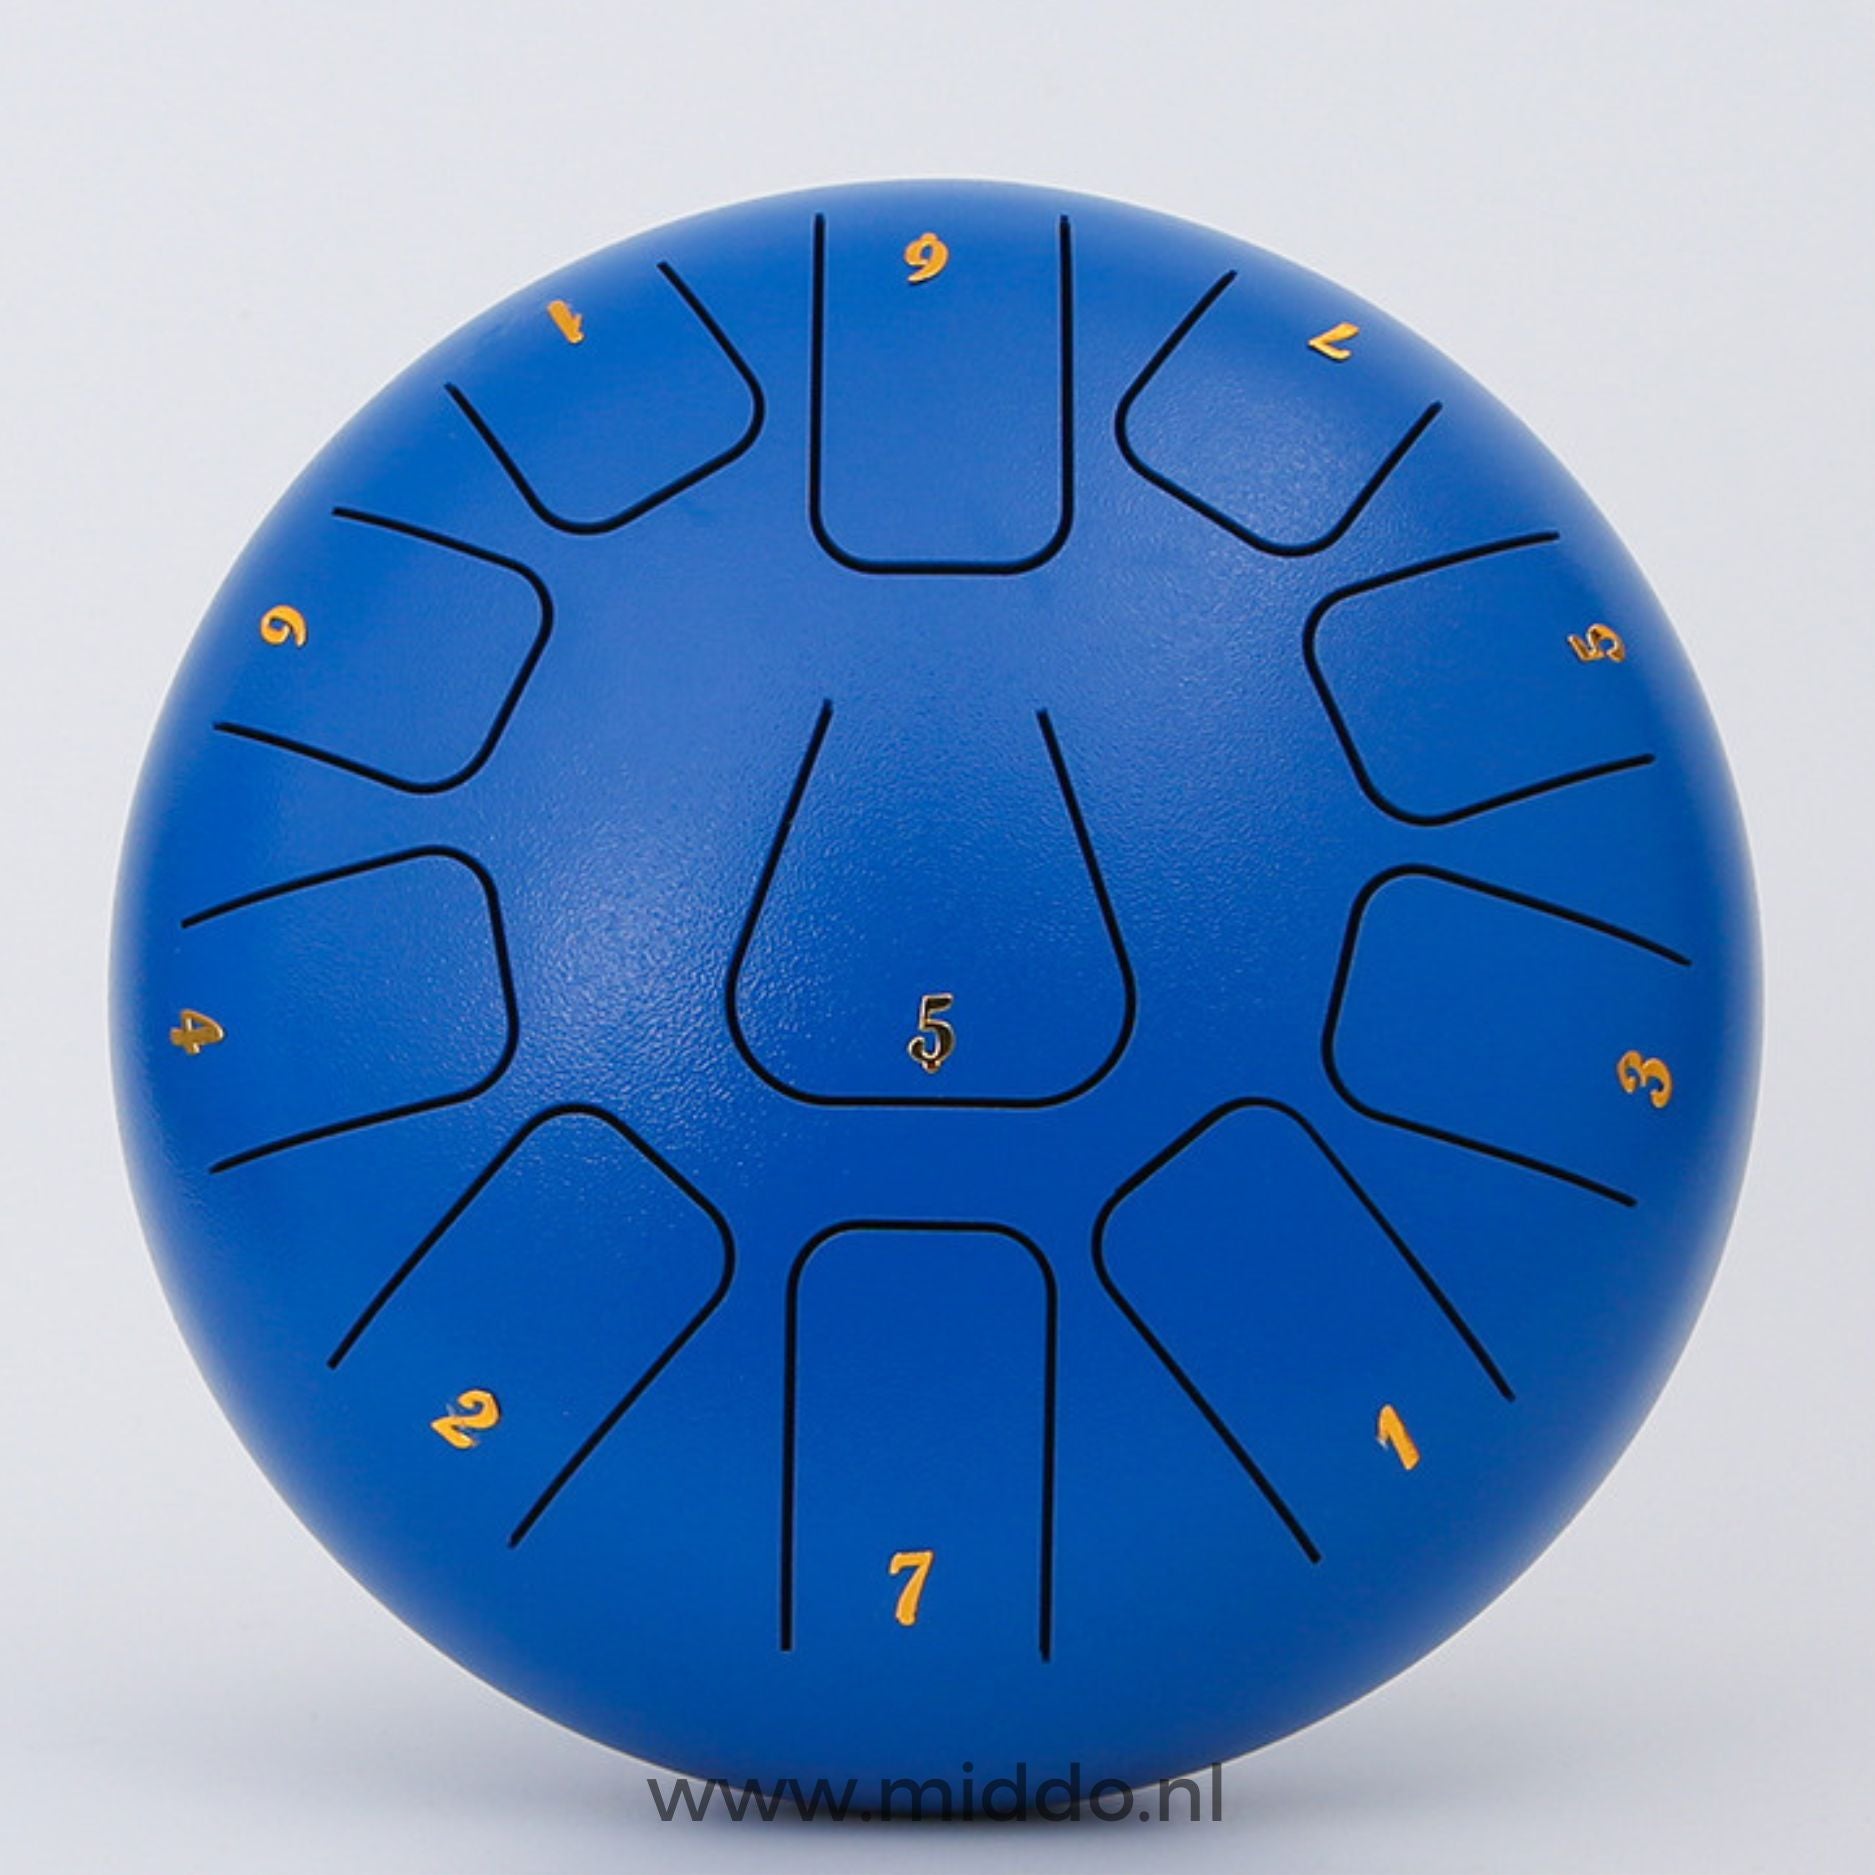 Blauwe steel tongue drum van 15 cm met cijfers